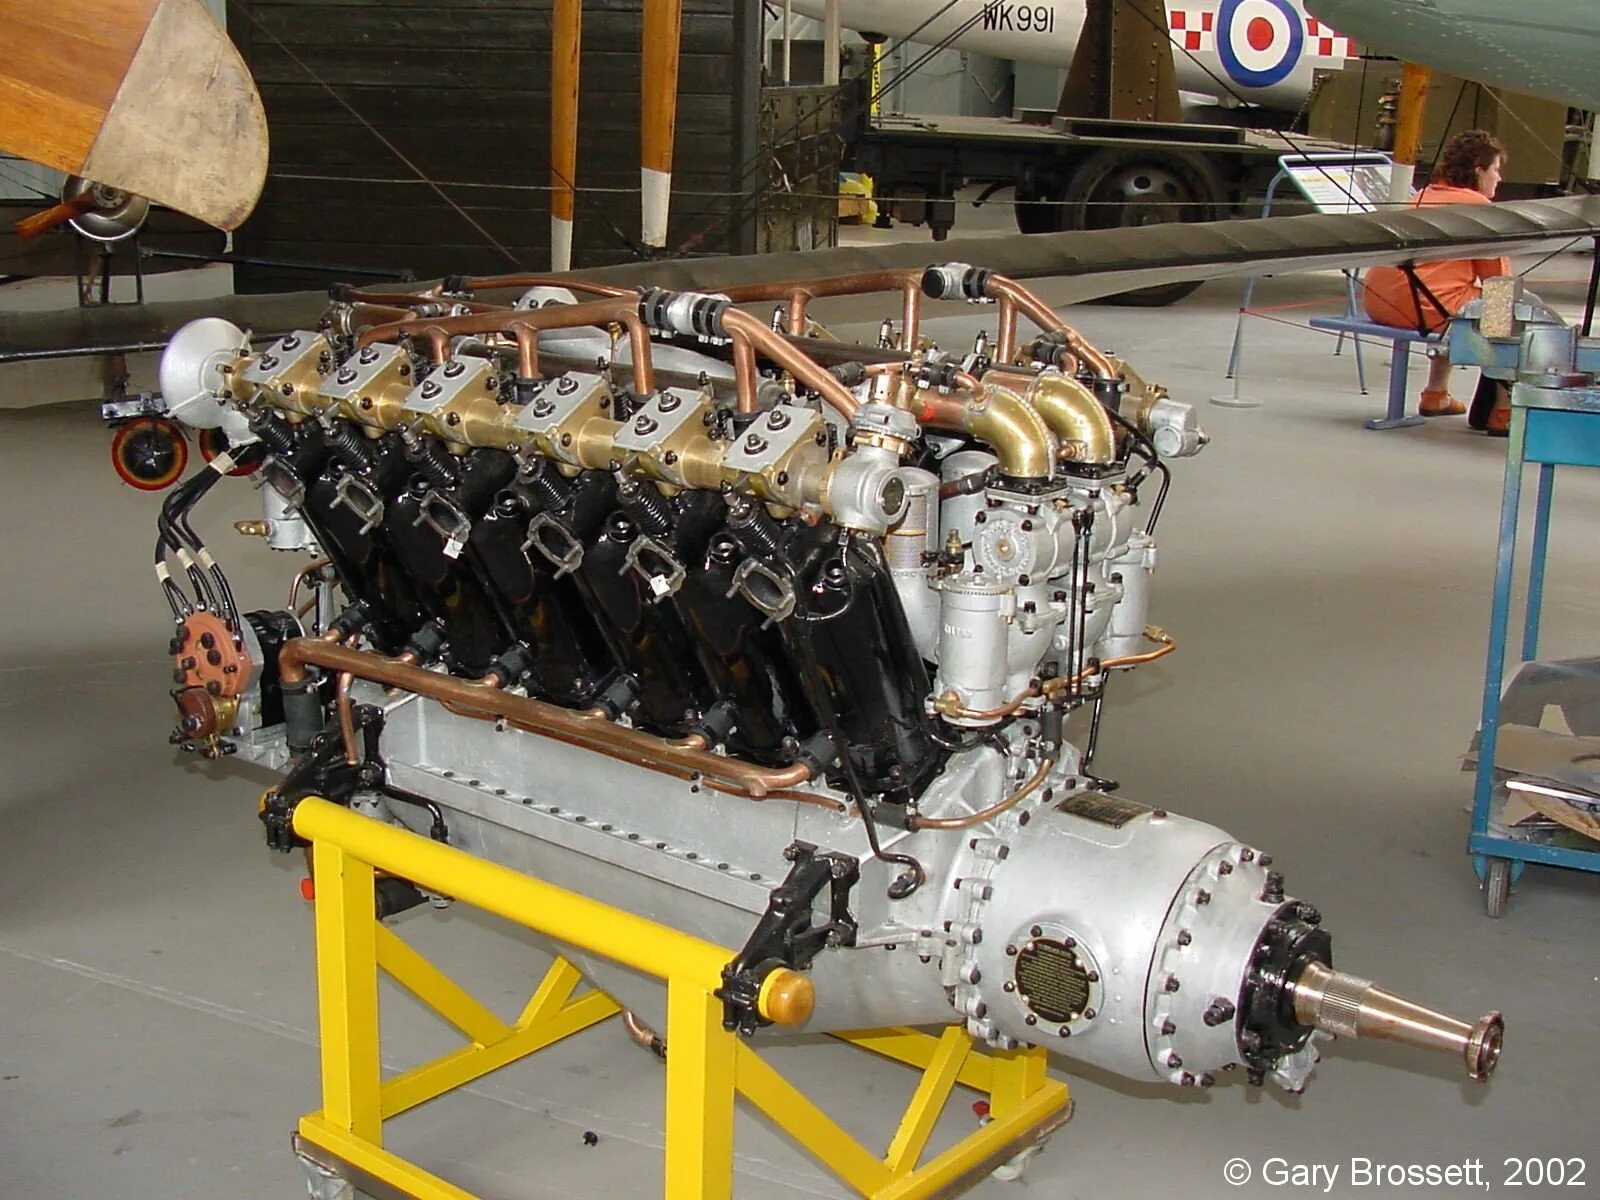 Двигатель роллс ройс. Мотор Роллс Ройс. Rolls-Royce Eagle. Двигатель Rolls-Royce Eagle VIII. Ролсройч с двигателем v24.